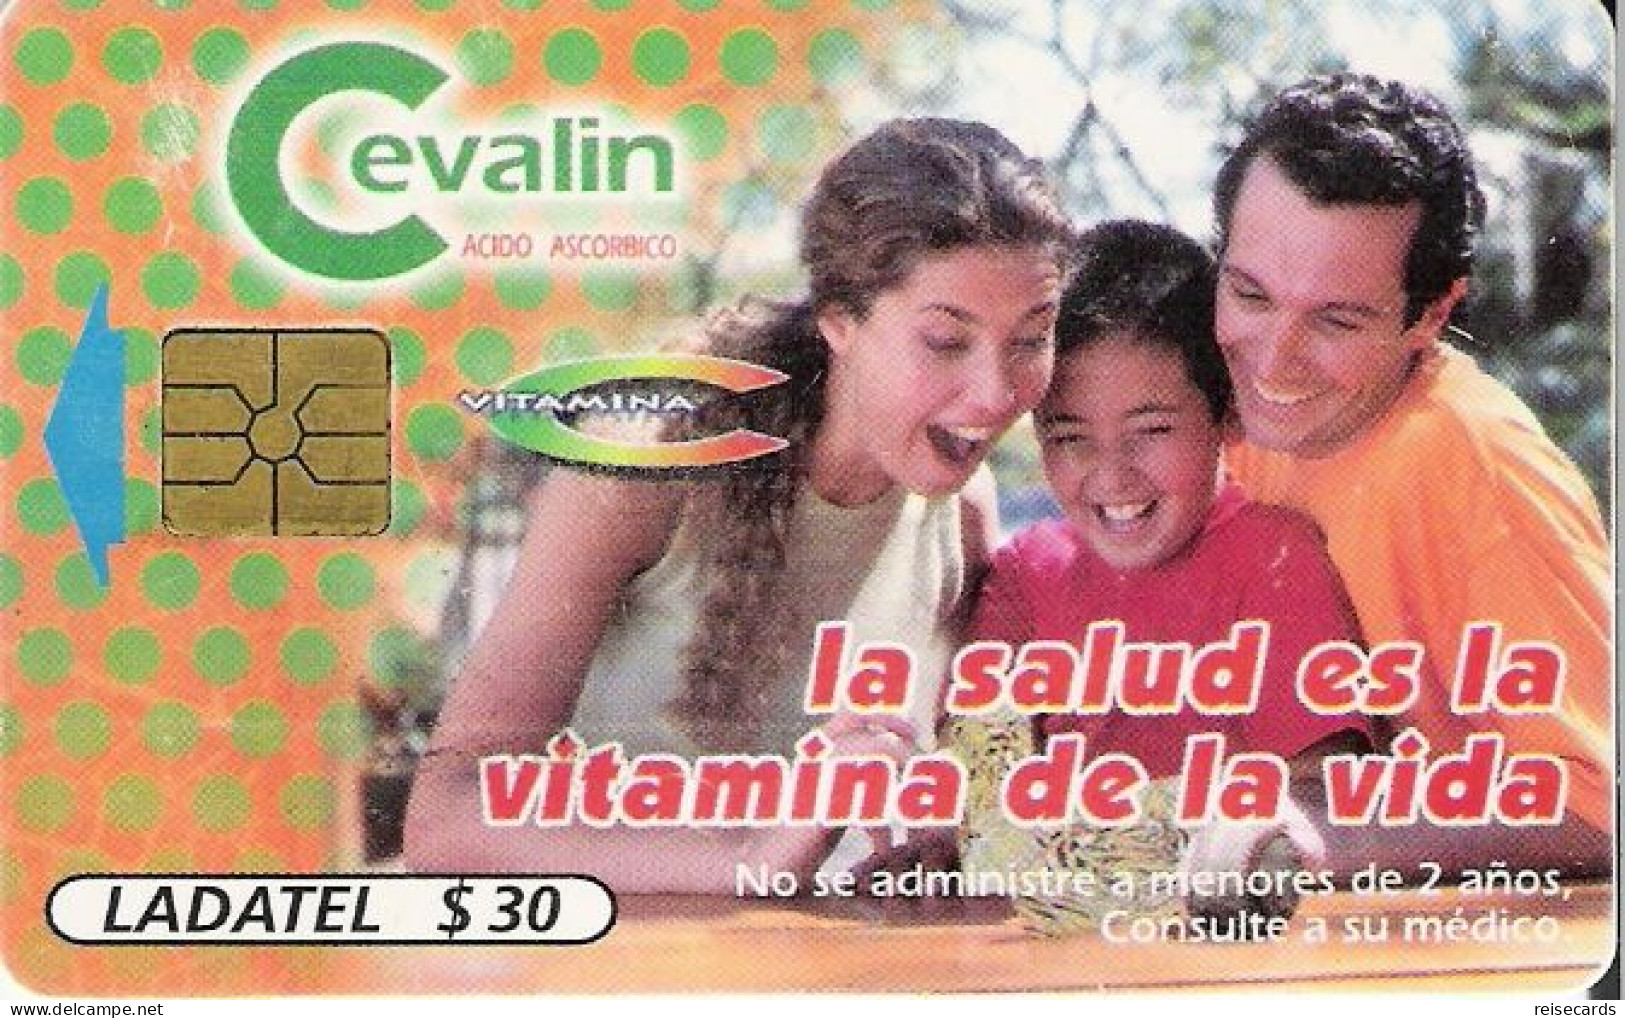 Mexico: Telmex/lLadatel - 1998 Cevalin - Mexico